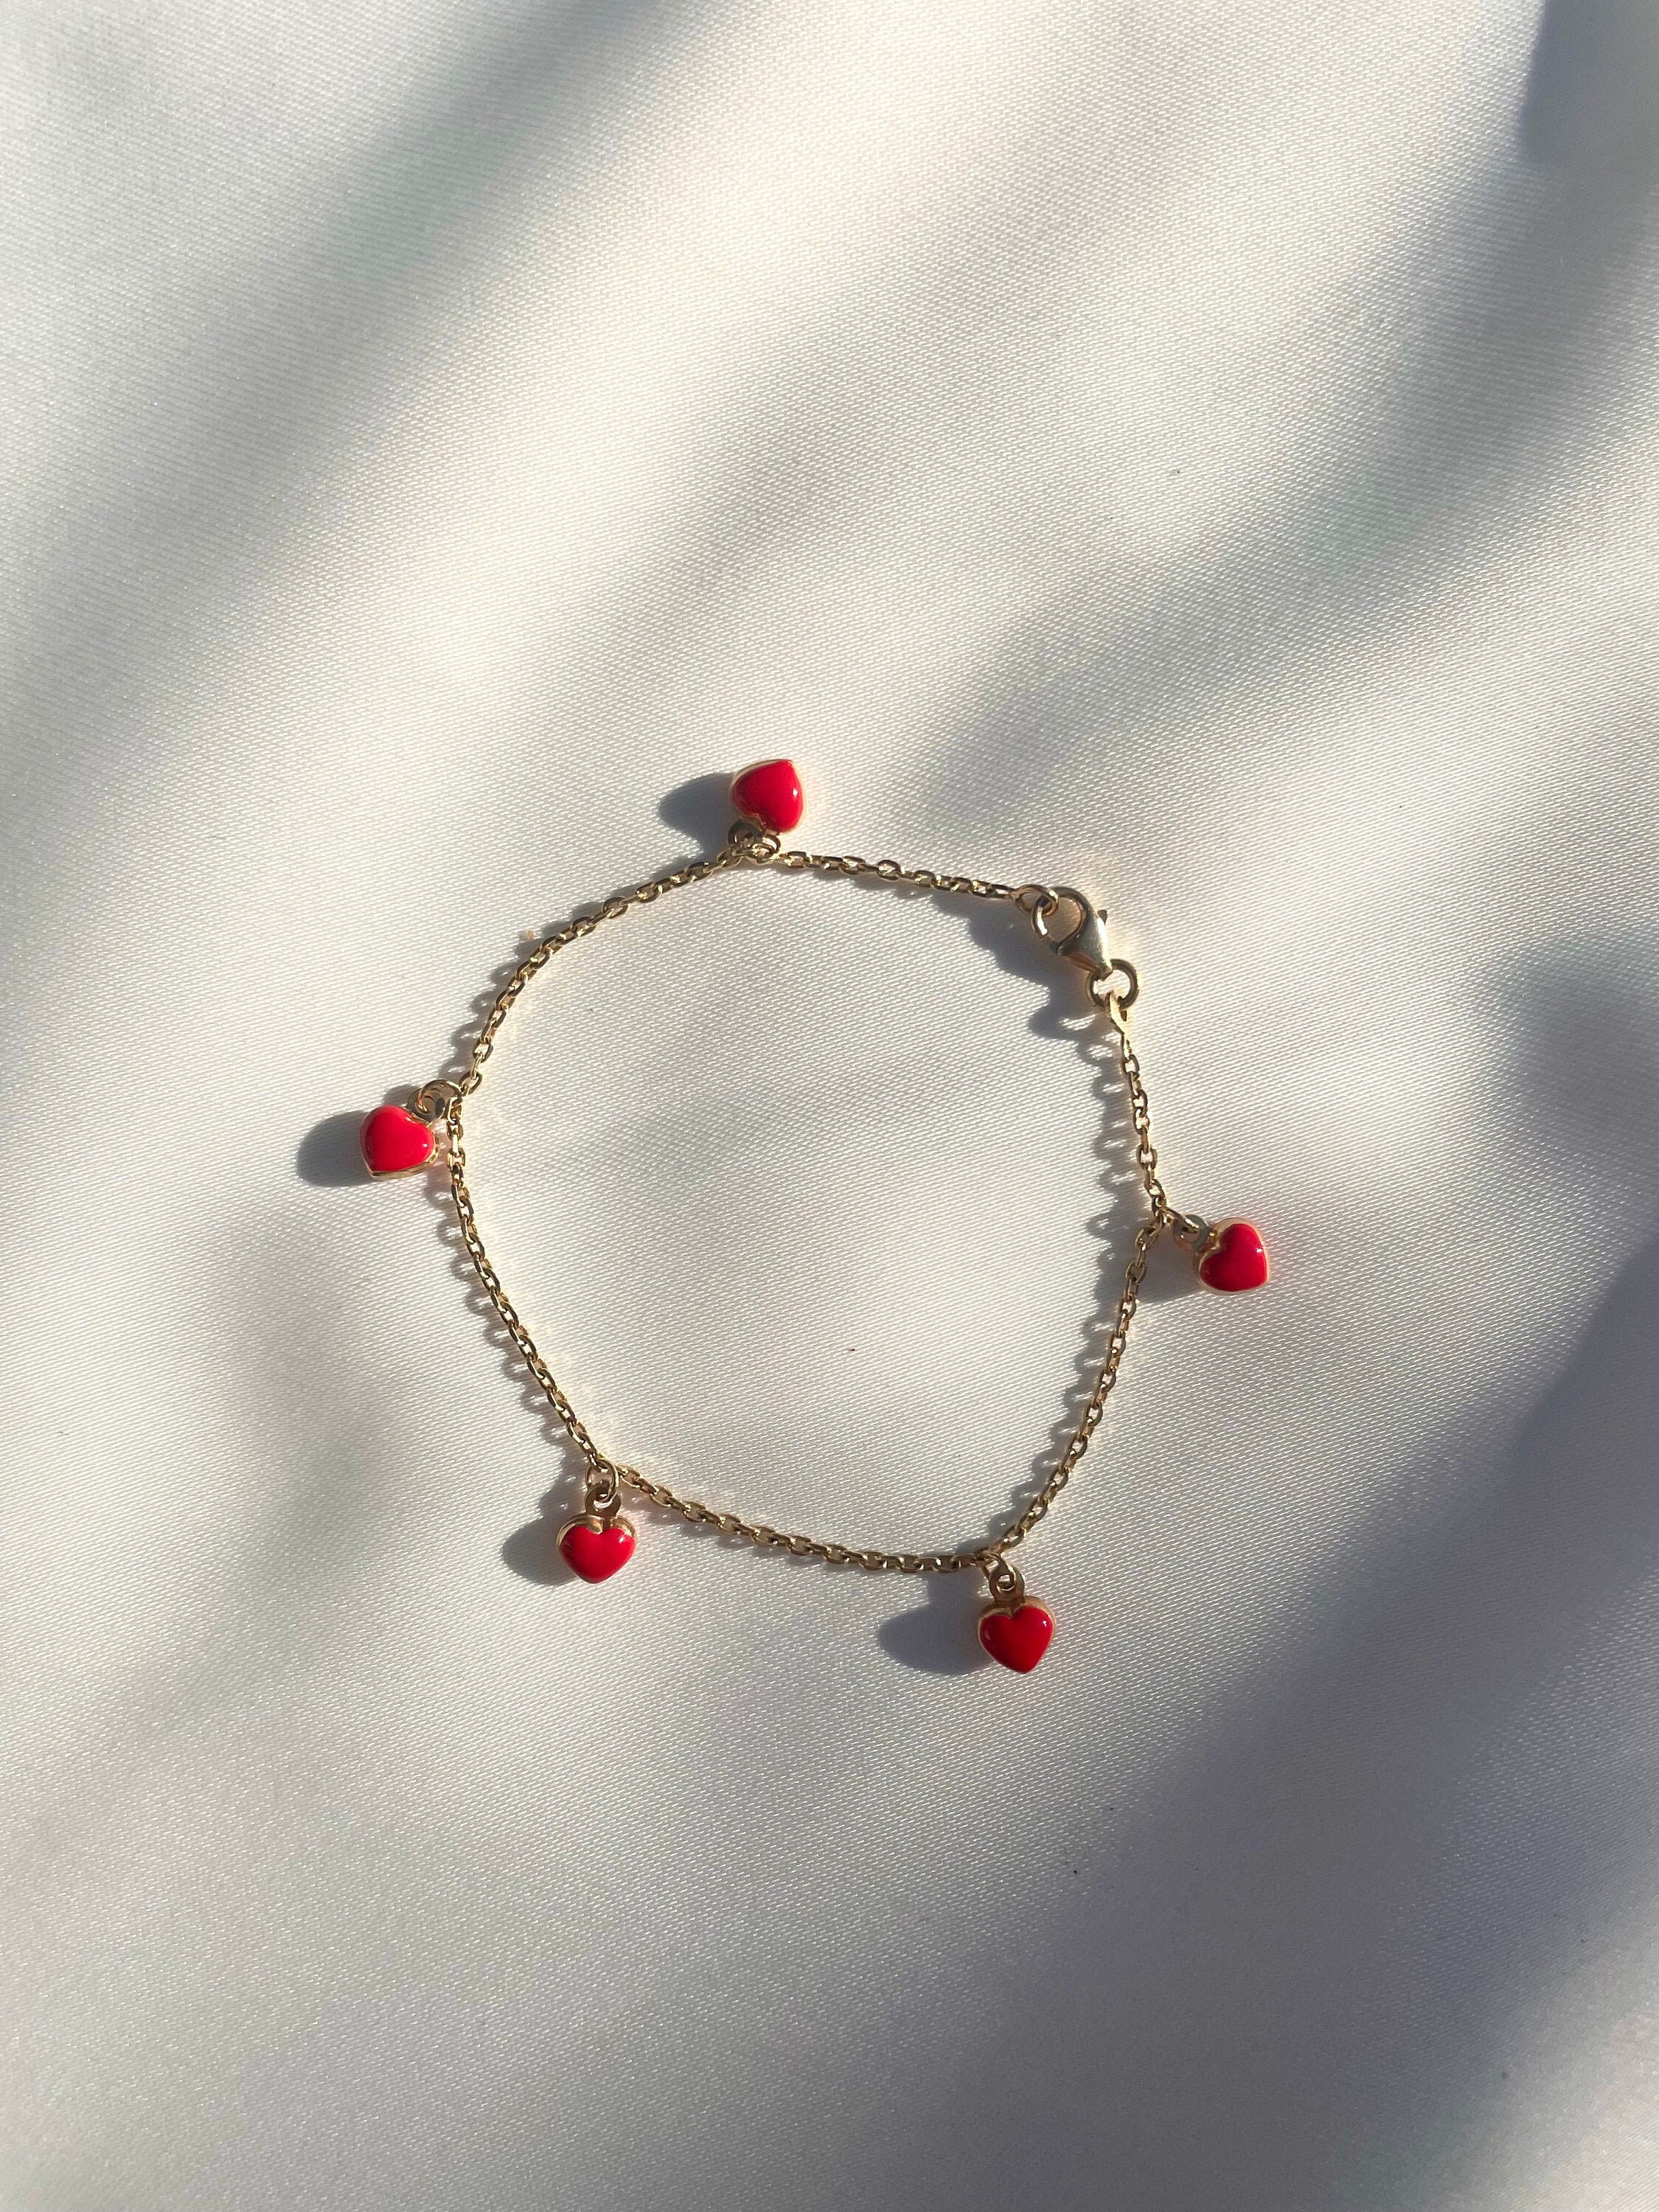 14k Solid Gold Red Enamel Puffed Heart Charm Bracelet - Etsy